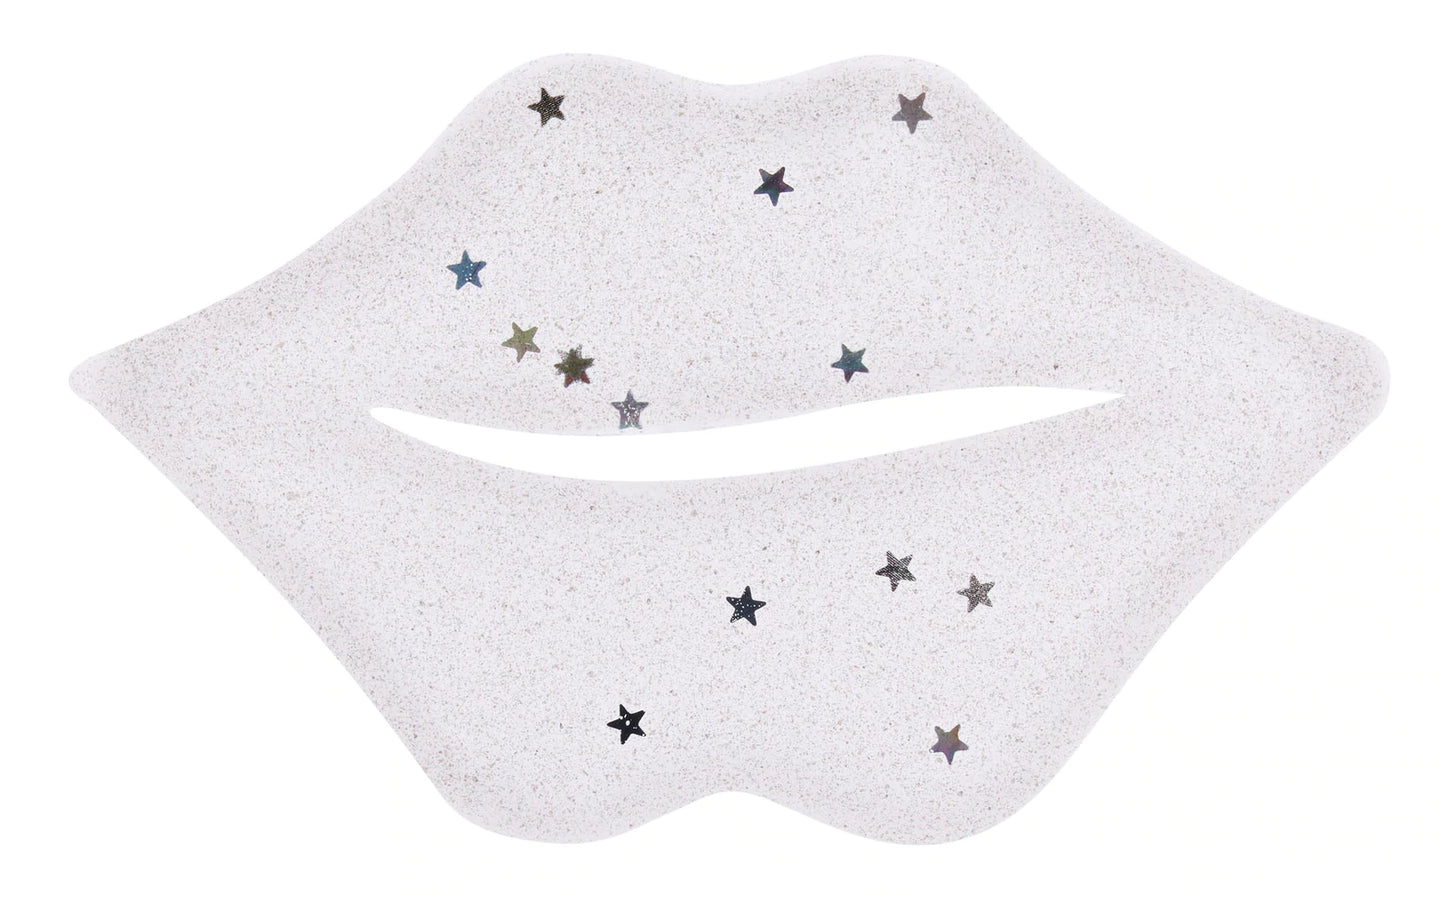 Summer Salt Body - Vegan Collagen Lip Mask (Glitter)